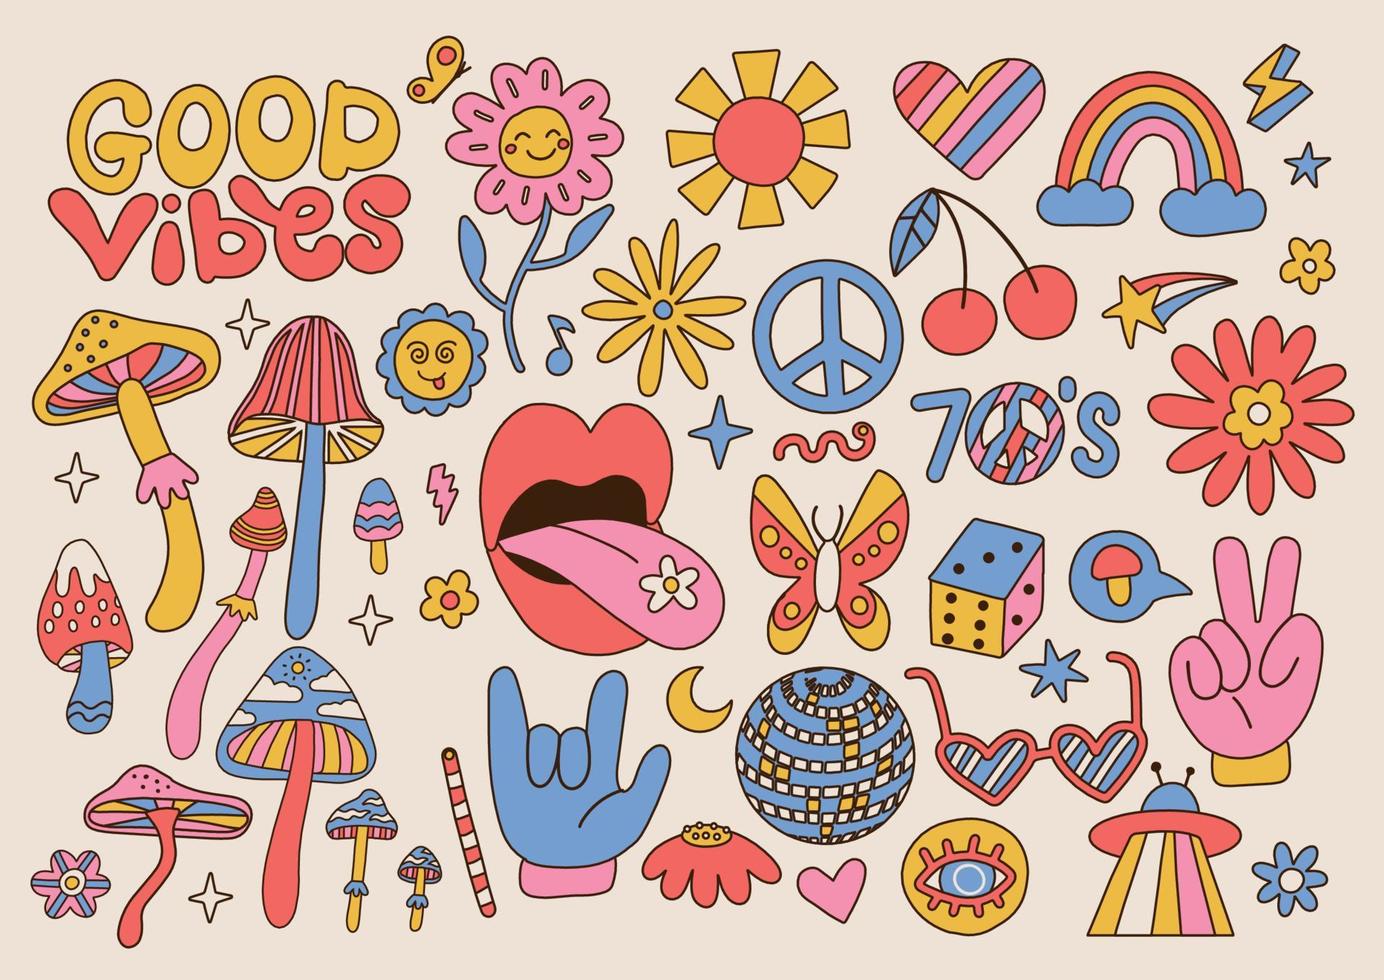 grande set di elementi groovy retrò anni '70, simpatici adesivi hippy funky. fiori della margherita dei cartoni animati, funghi, segno di pace, labbra, arcobaleno, collezione hippie. simboli isolati di vettore di drdawn della mano positiva.